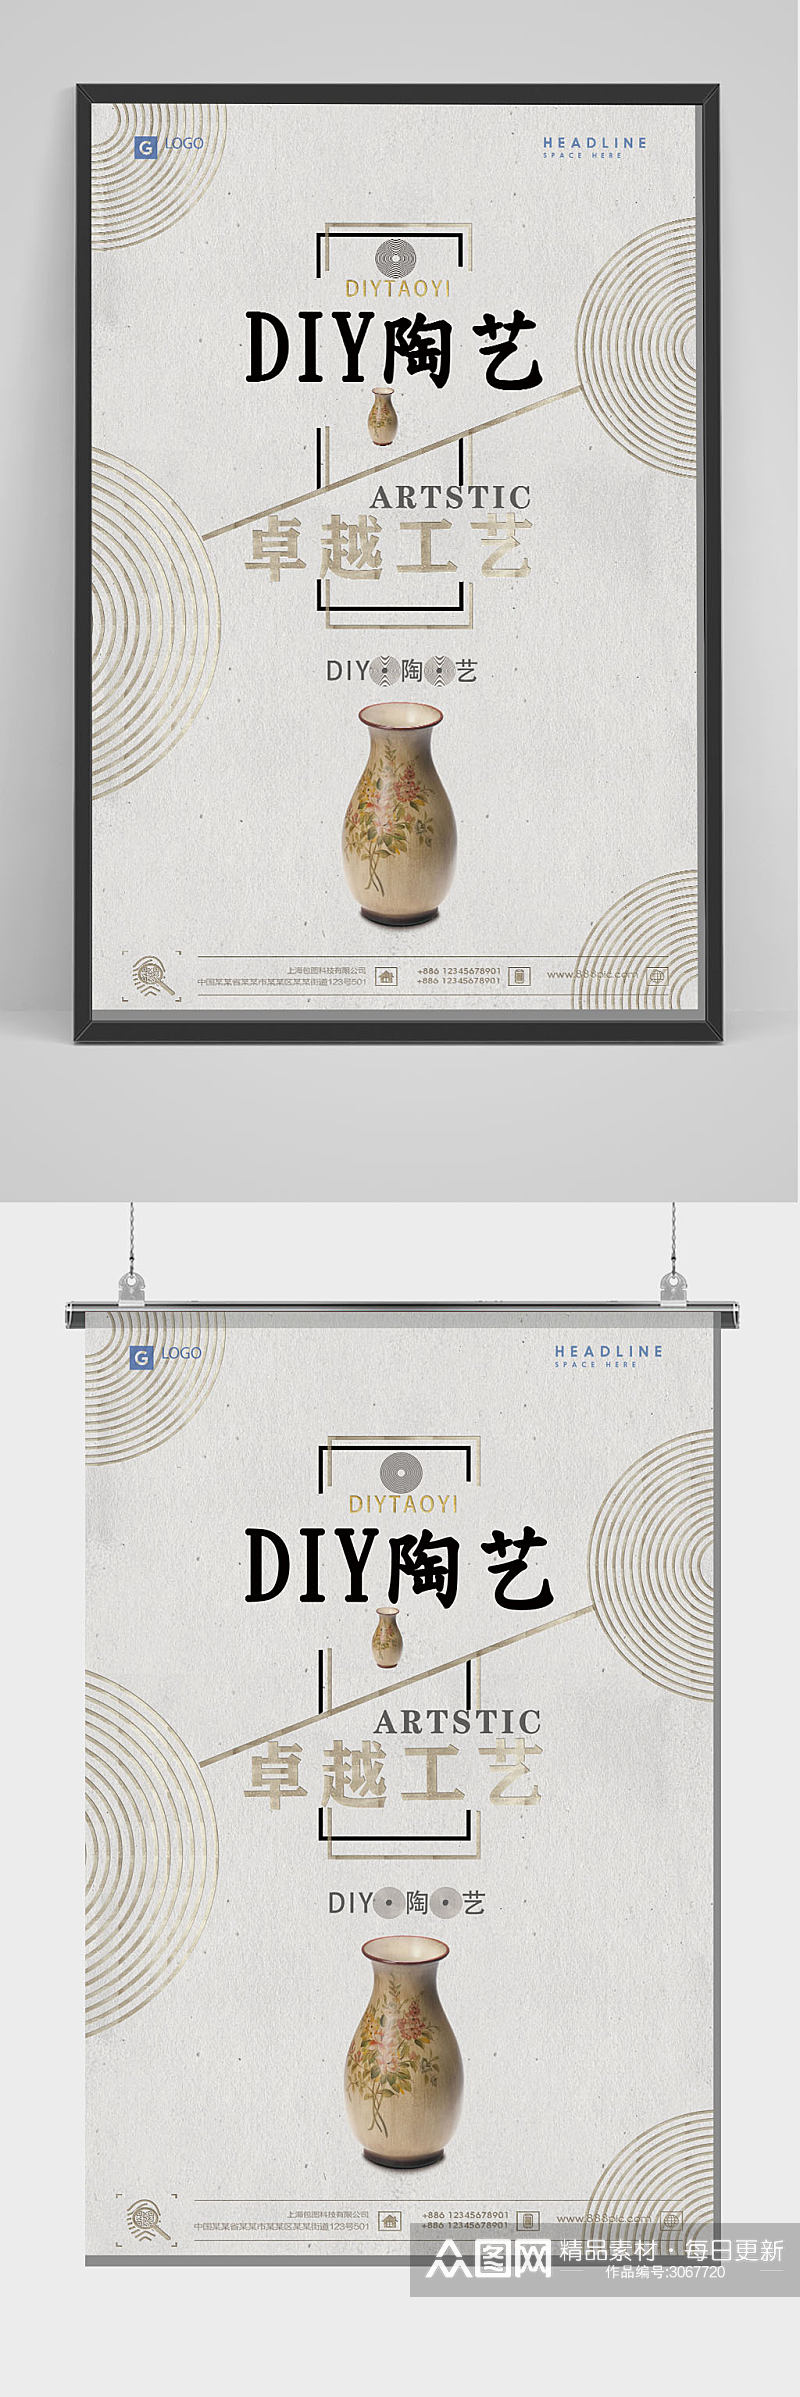 DIY陶艺海报简约宣传海报素材